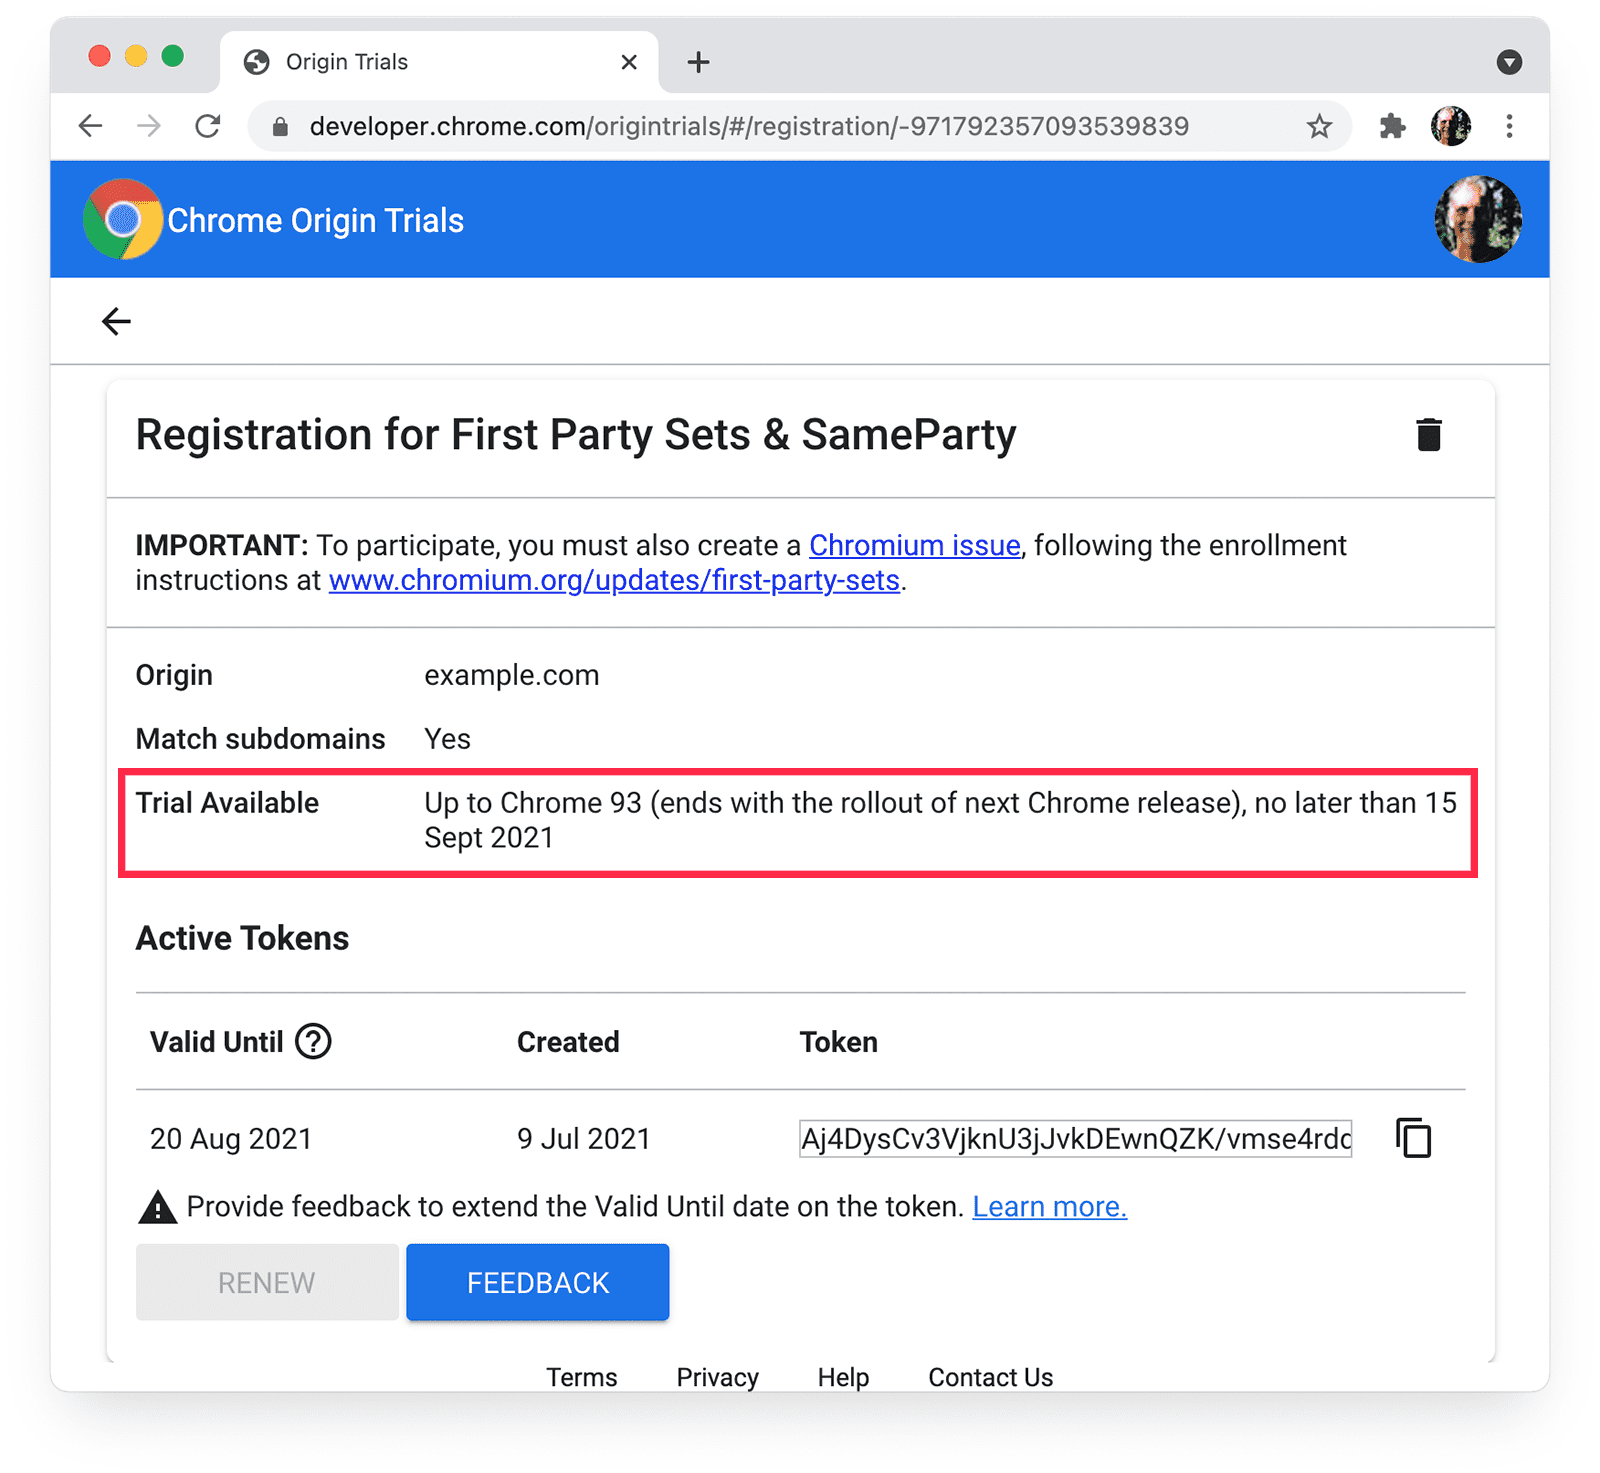 דף המקור לניסיון ב-Chrome
עבור דומיינים של צד ראשון ו-SameParty עם פרטים זמינים בתקופת הניסיון.